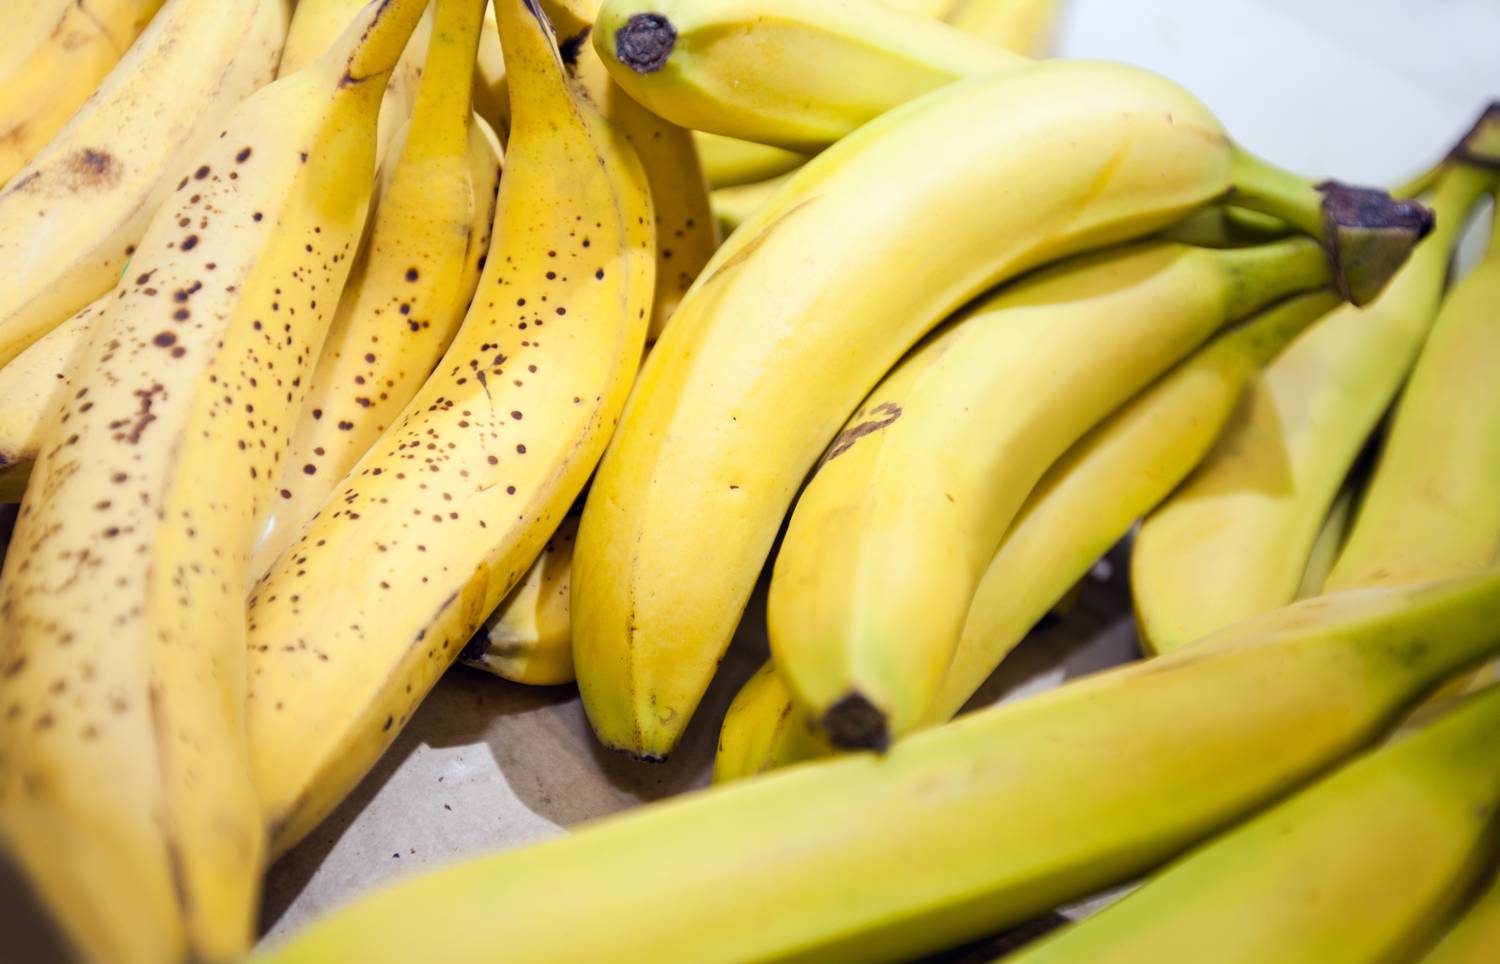 Meglepő, de így hat a banán a magas koleszterinszintre - EgészségKalauz